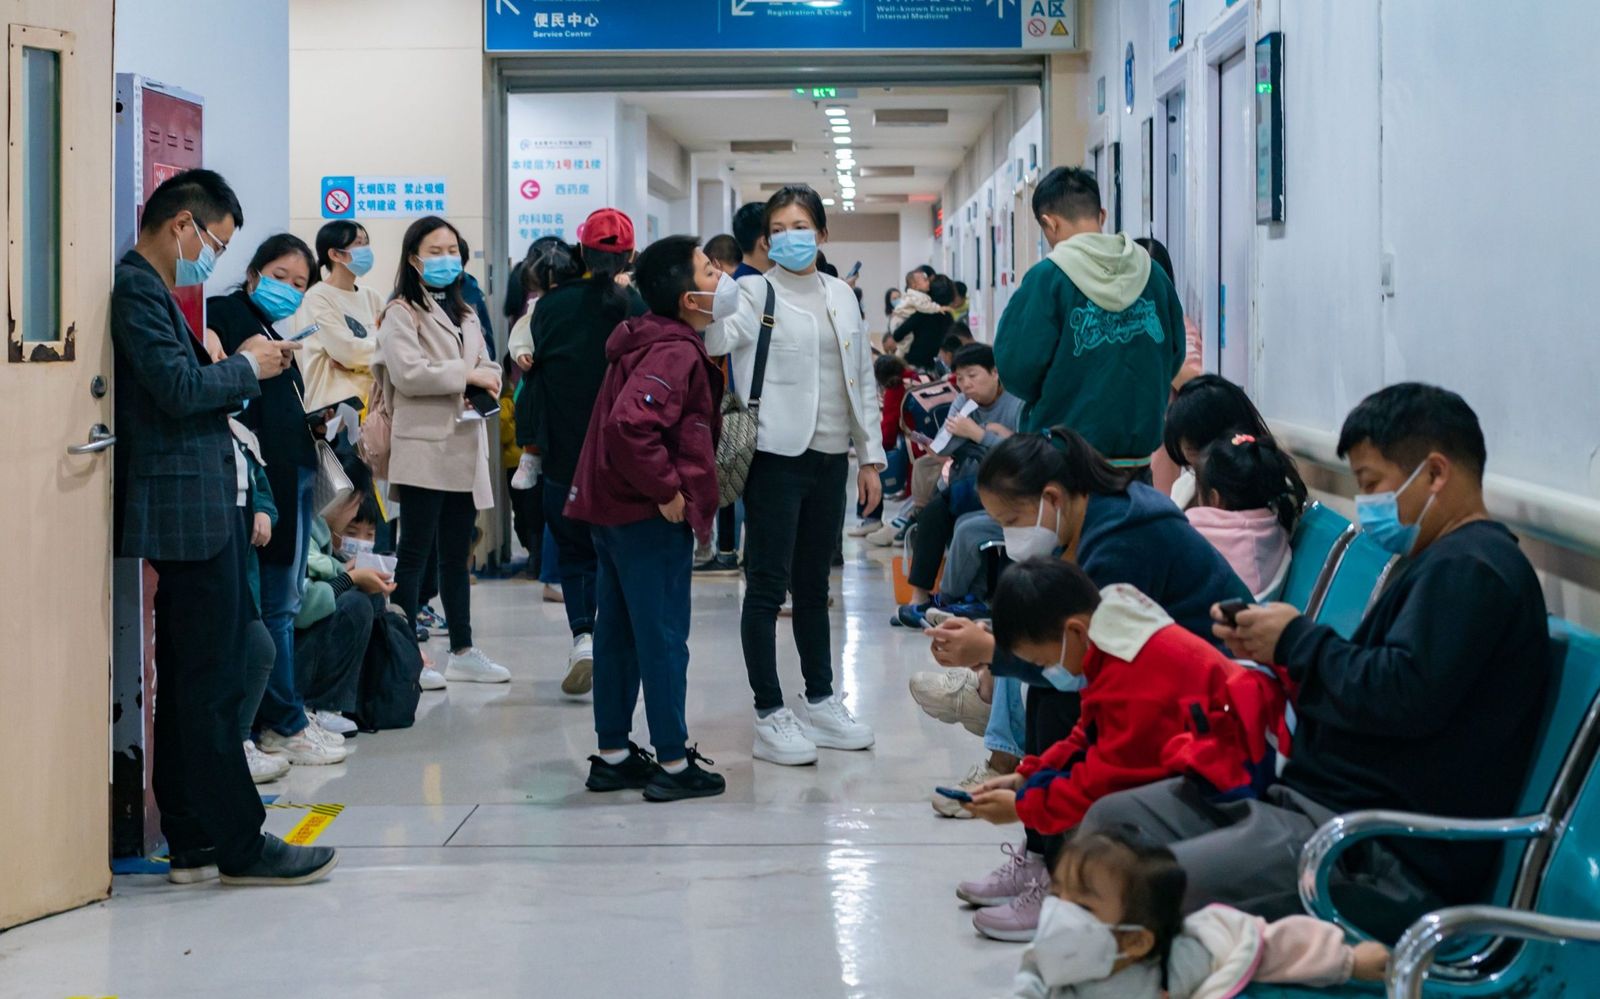 Хятадад дэгдсэн амьсгалын замын өвчний ард шинэ вирус илрээгүйг мэдэгдлээ